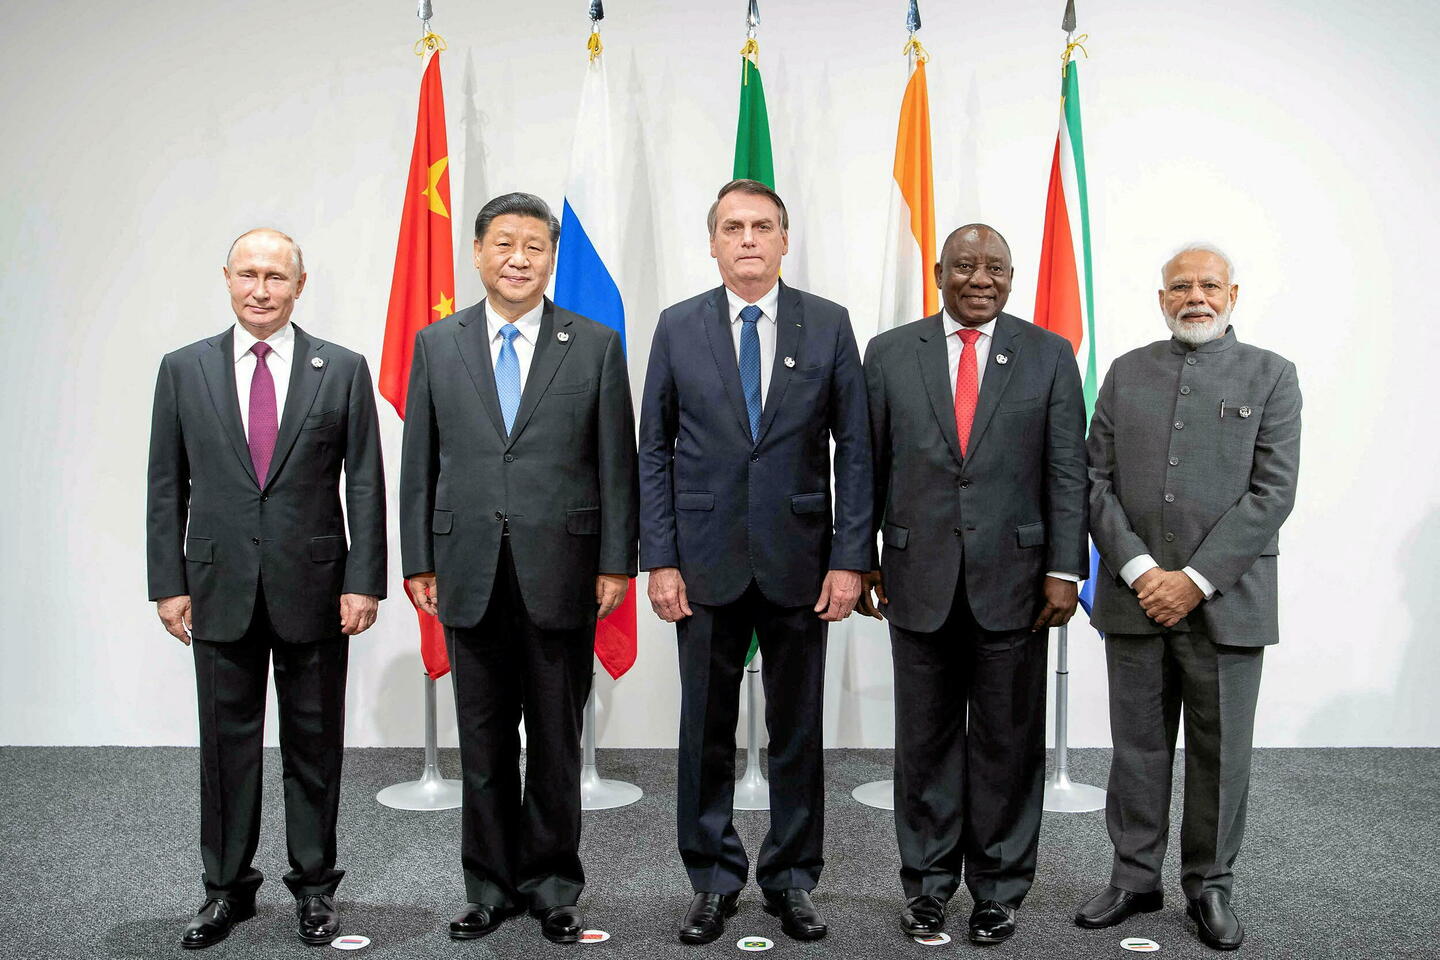 BRICS : vers une unité de compte commune alternative au dollar